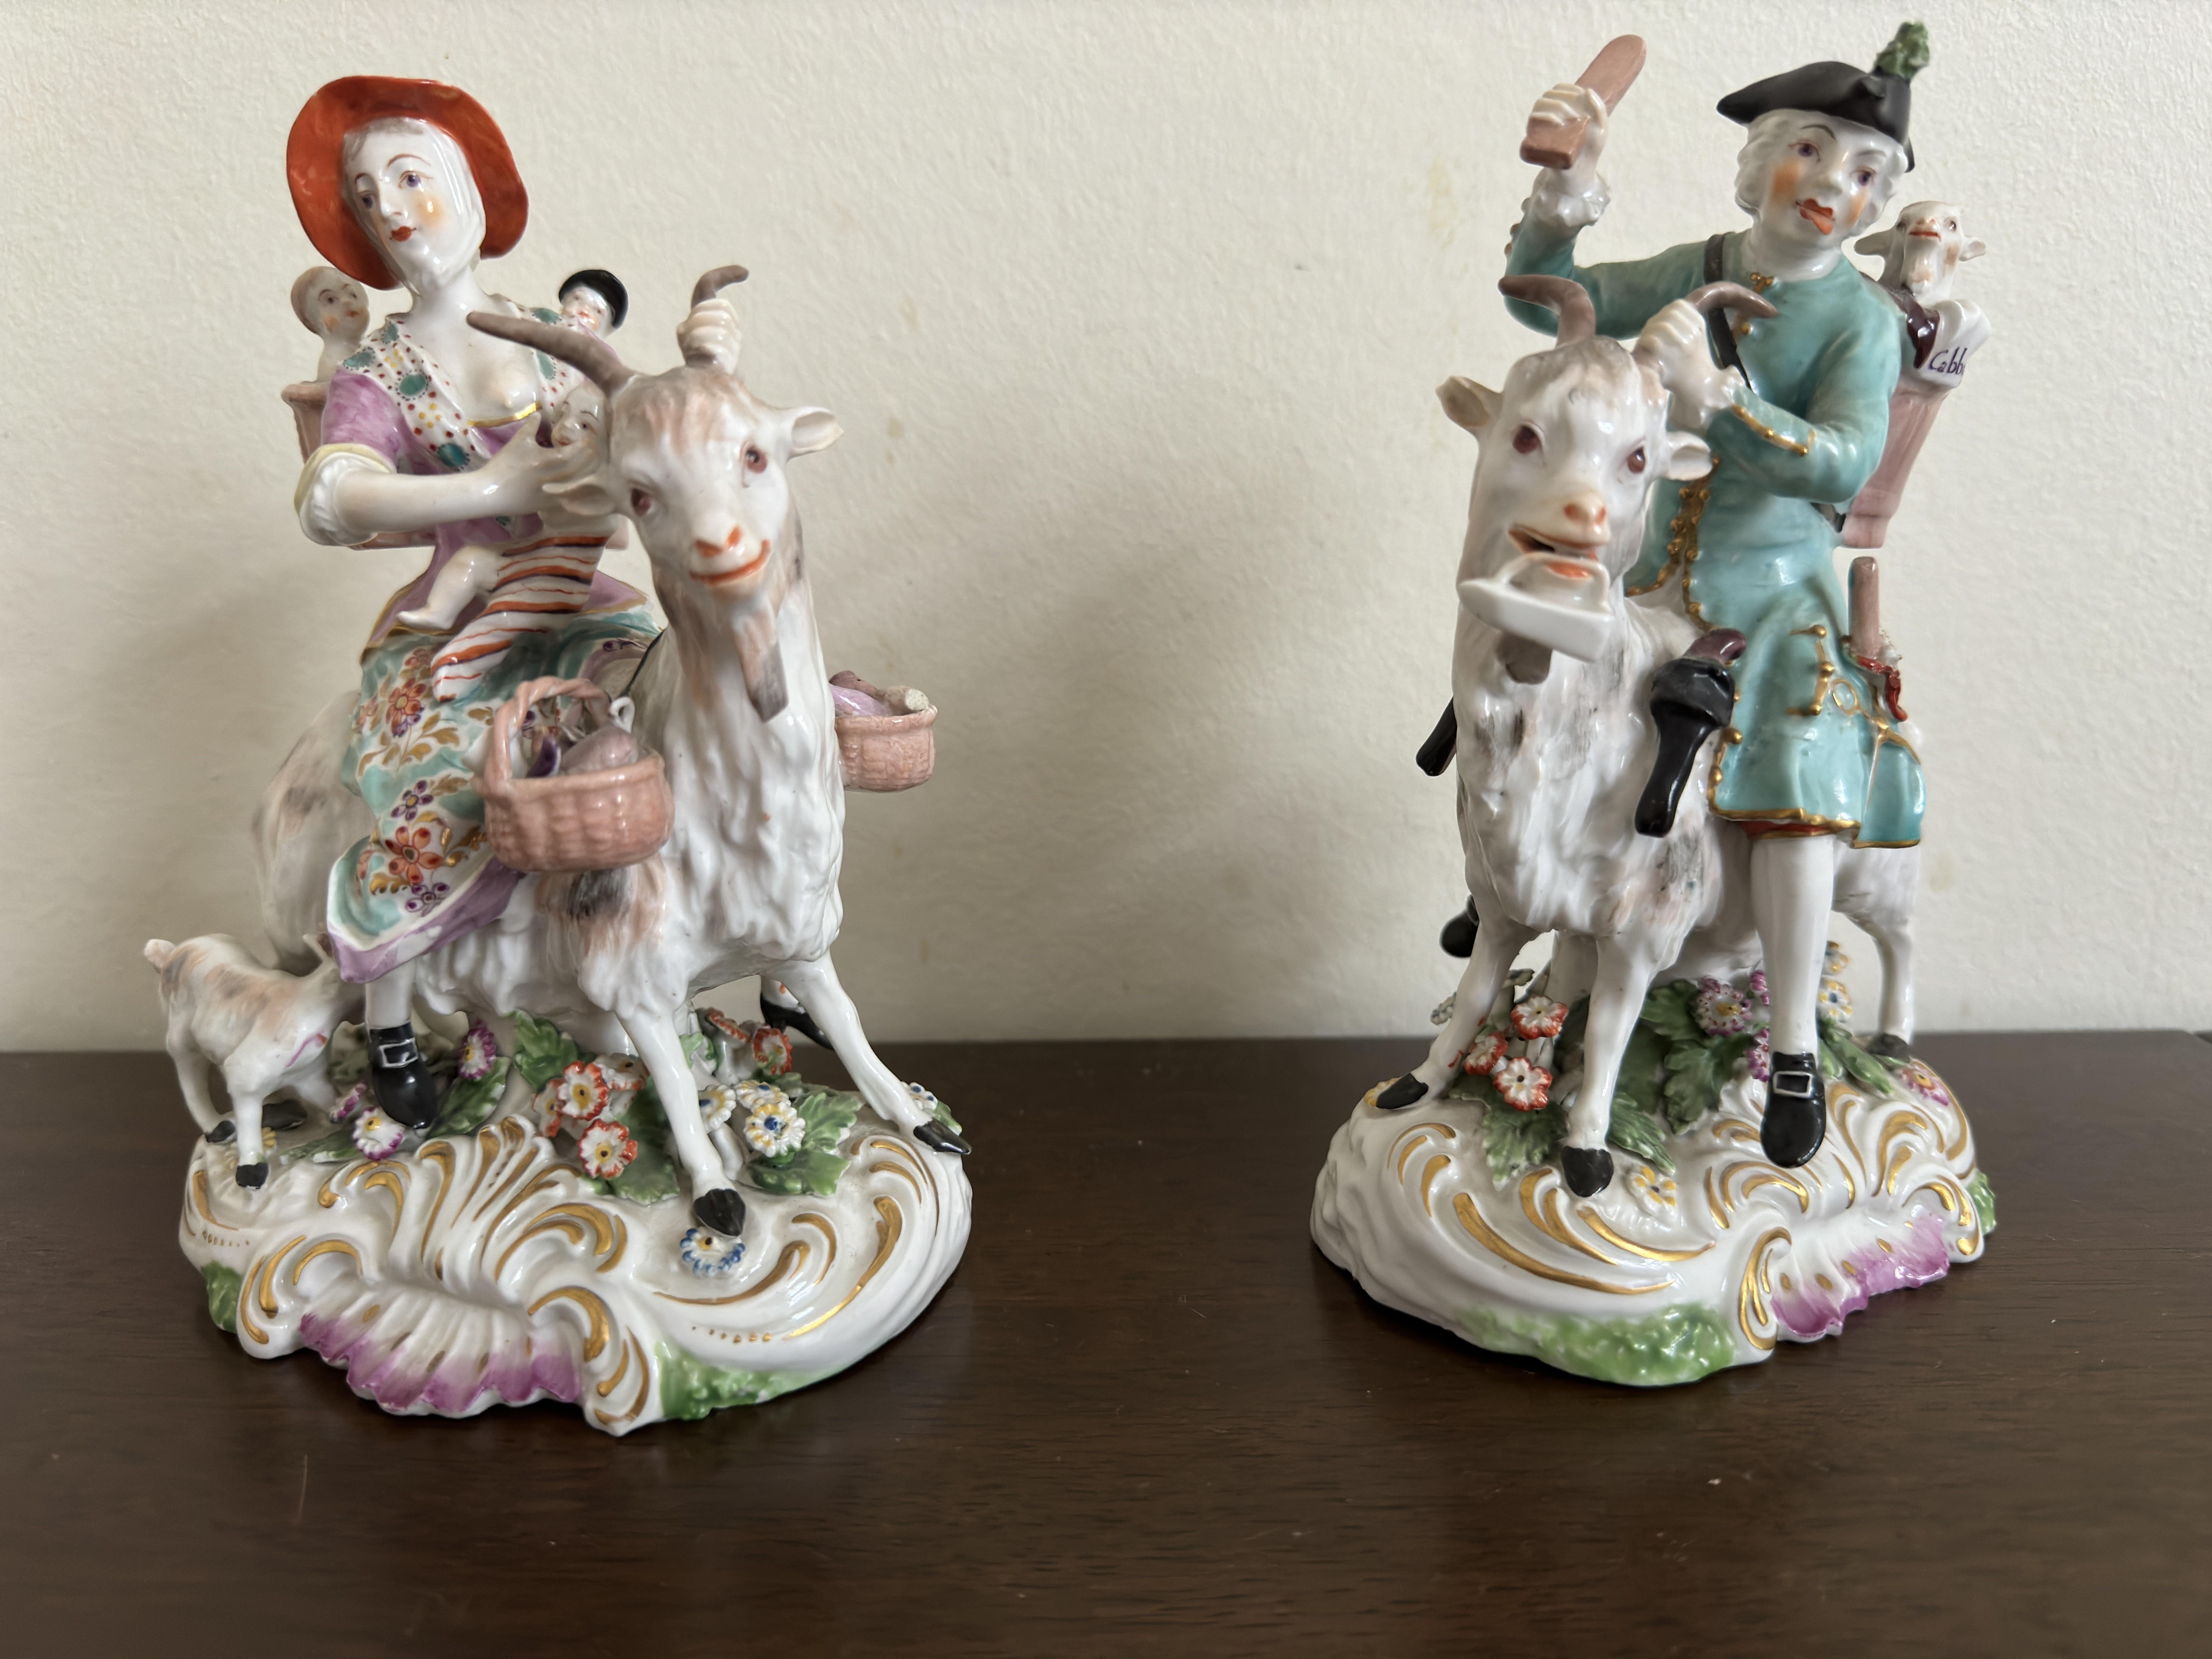 Paar Derby-Figuren  mit der Darstellung 'Welch Tailor and his Wife on Goats' um 1800. 
Diese Derby-Figuren wurden ursprünglich von den Meißner Originalen kopiert (Bildhauer J. J. Kaendler). 
Sie sind sehr detailreich gestaltet, von den kleinen